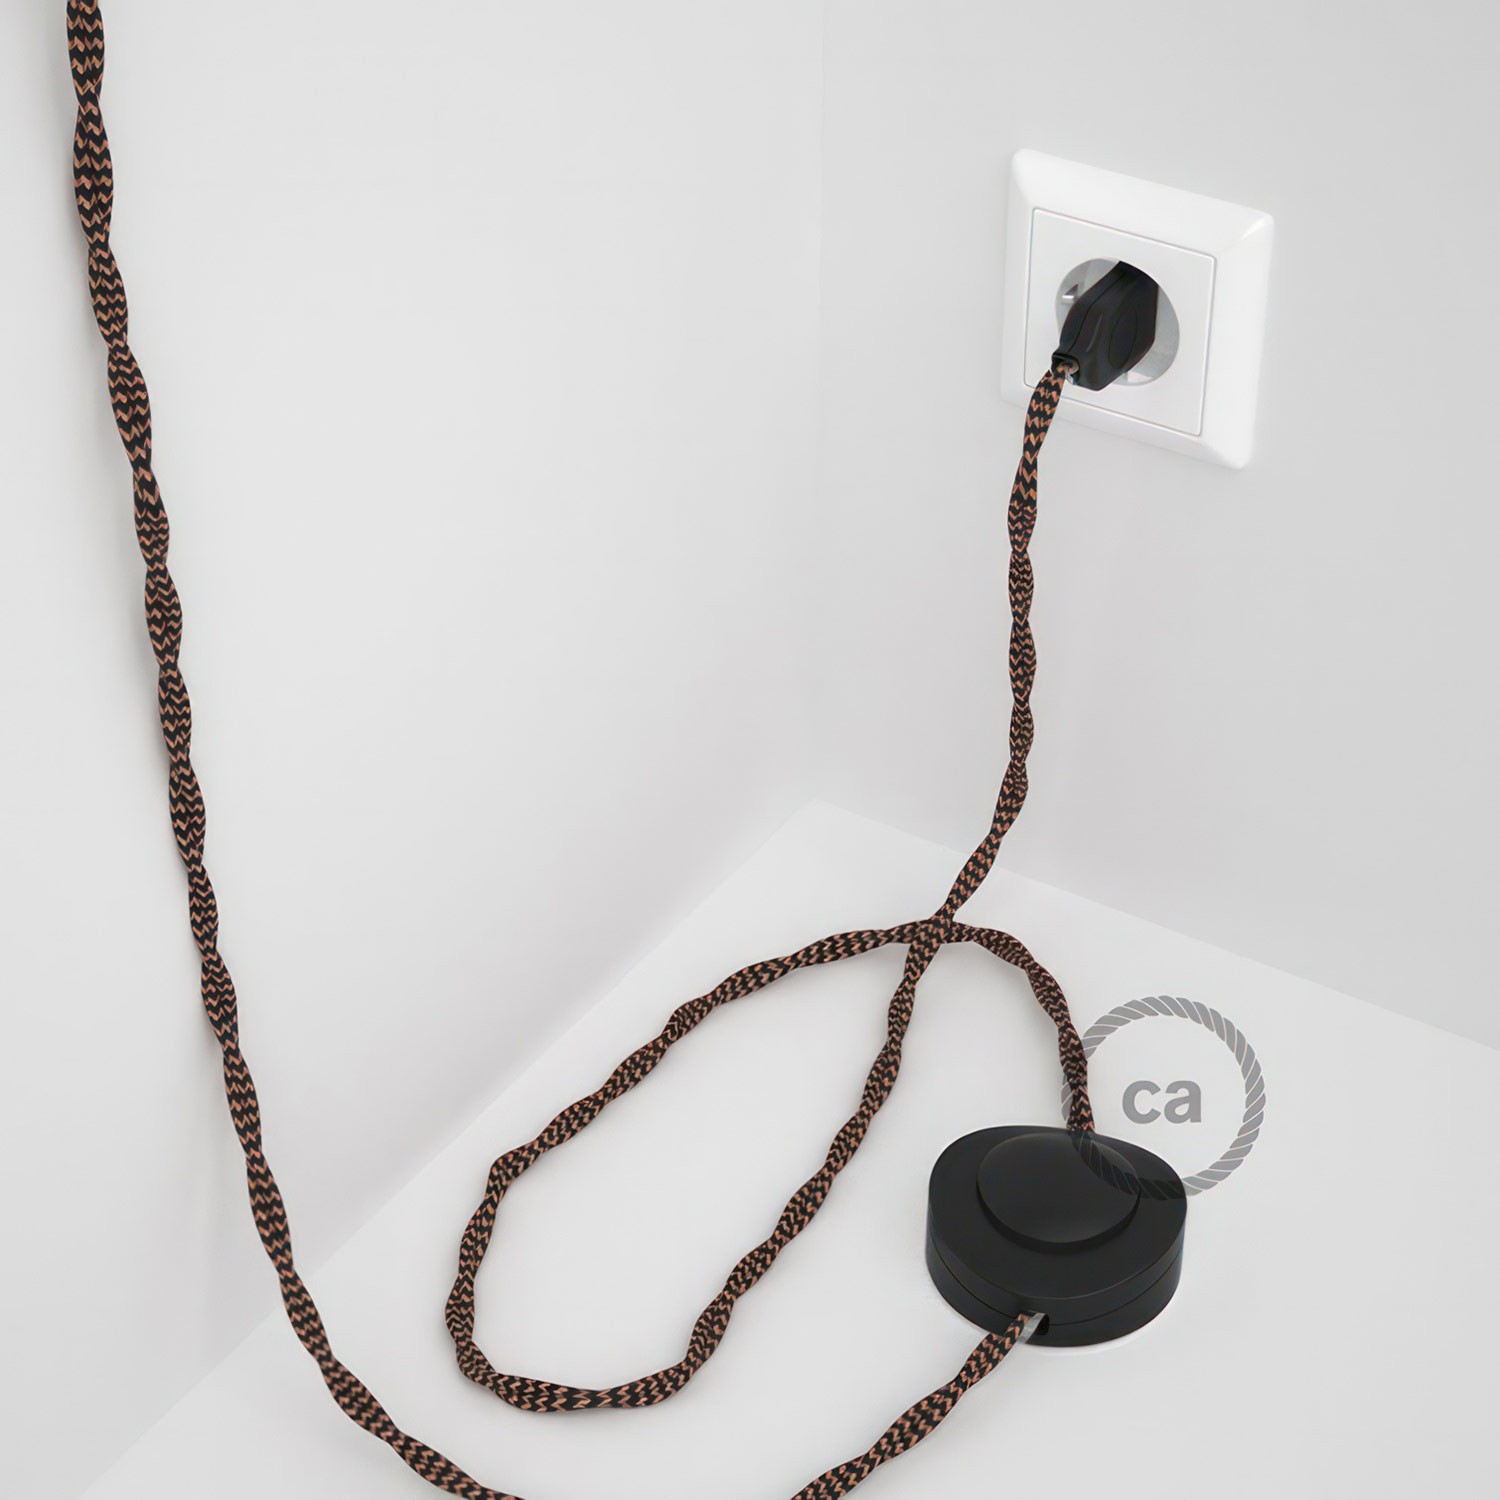 Cableado para lámpara de pie, cable TZ22 Efecto Seda Negro y Whisky 3 m. Elige tu el color de la clavija y del interruptor!